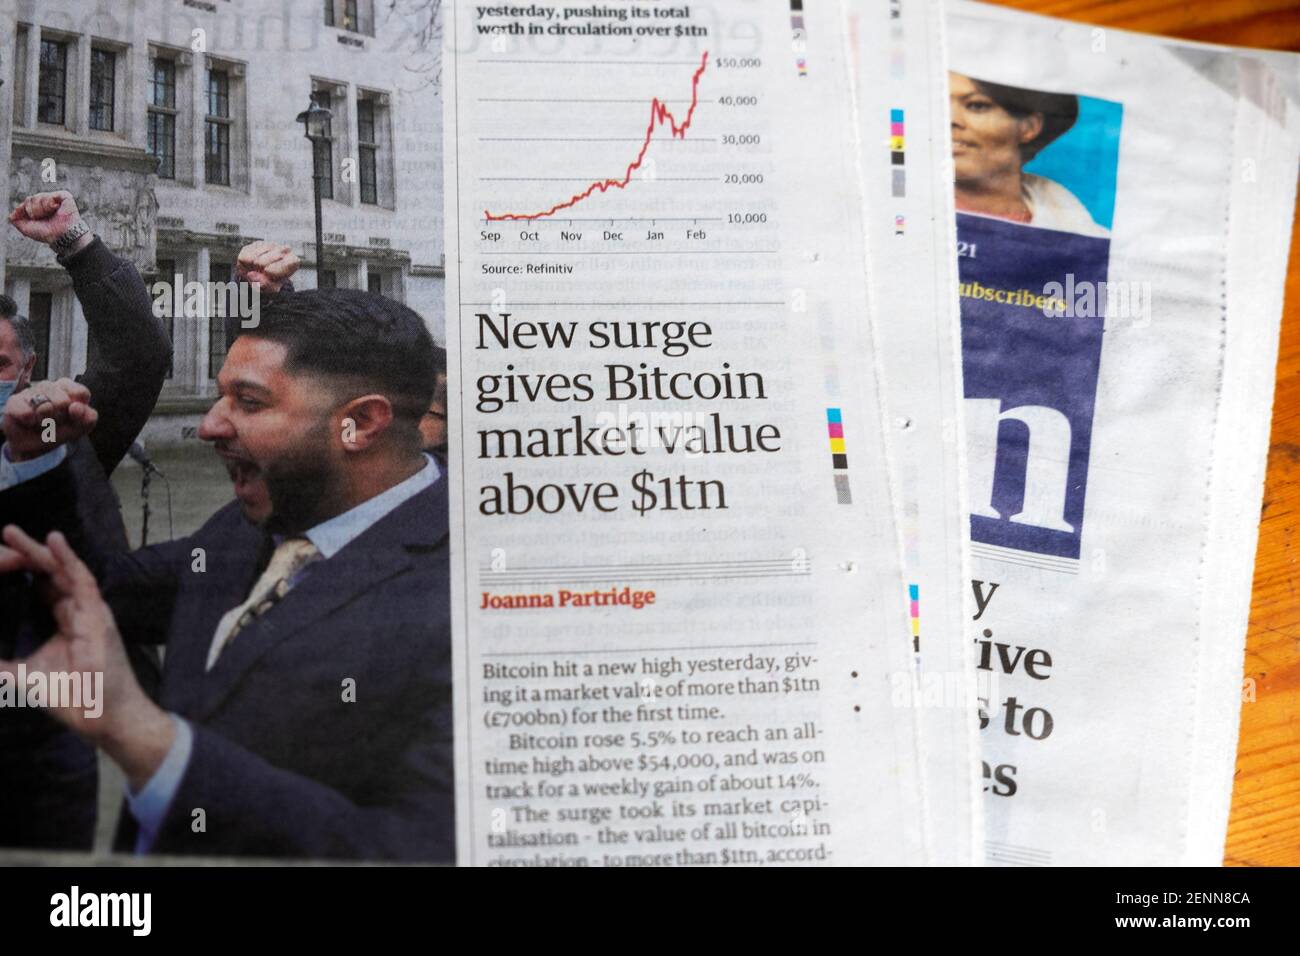 "Il nuovo aumento dà il valore di mercato di Bitcoin oltre 1 tn dollari" giornale Guardian Titolo articolo del 20 Febbraio 2021 Londra Gran Bretagna UK Foto Stock